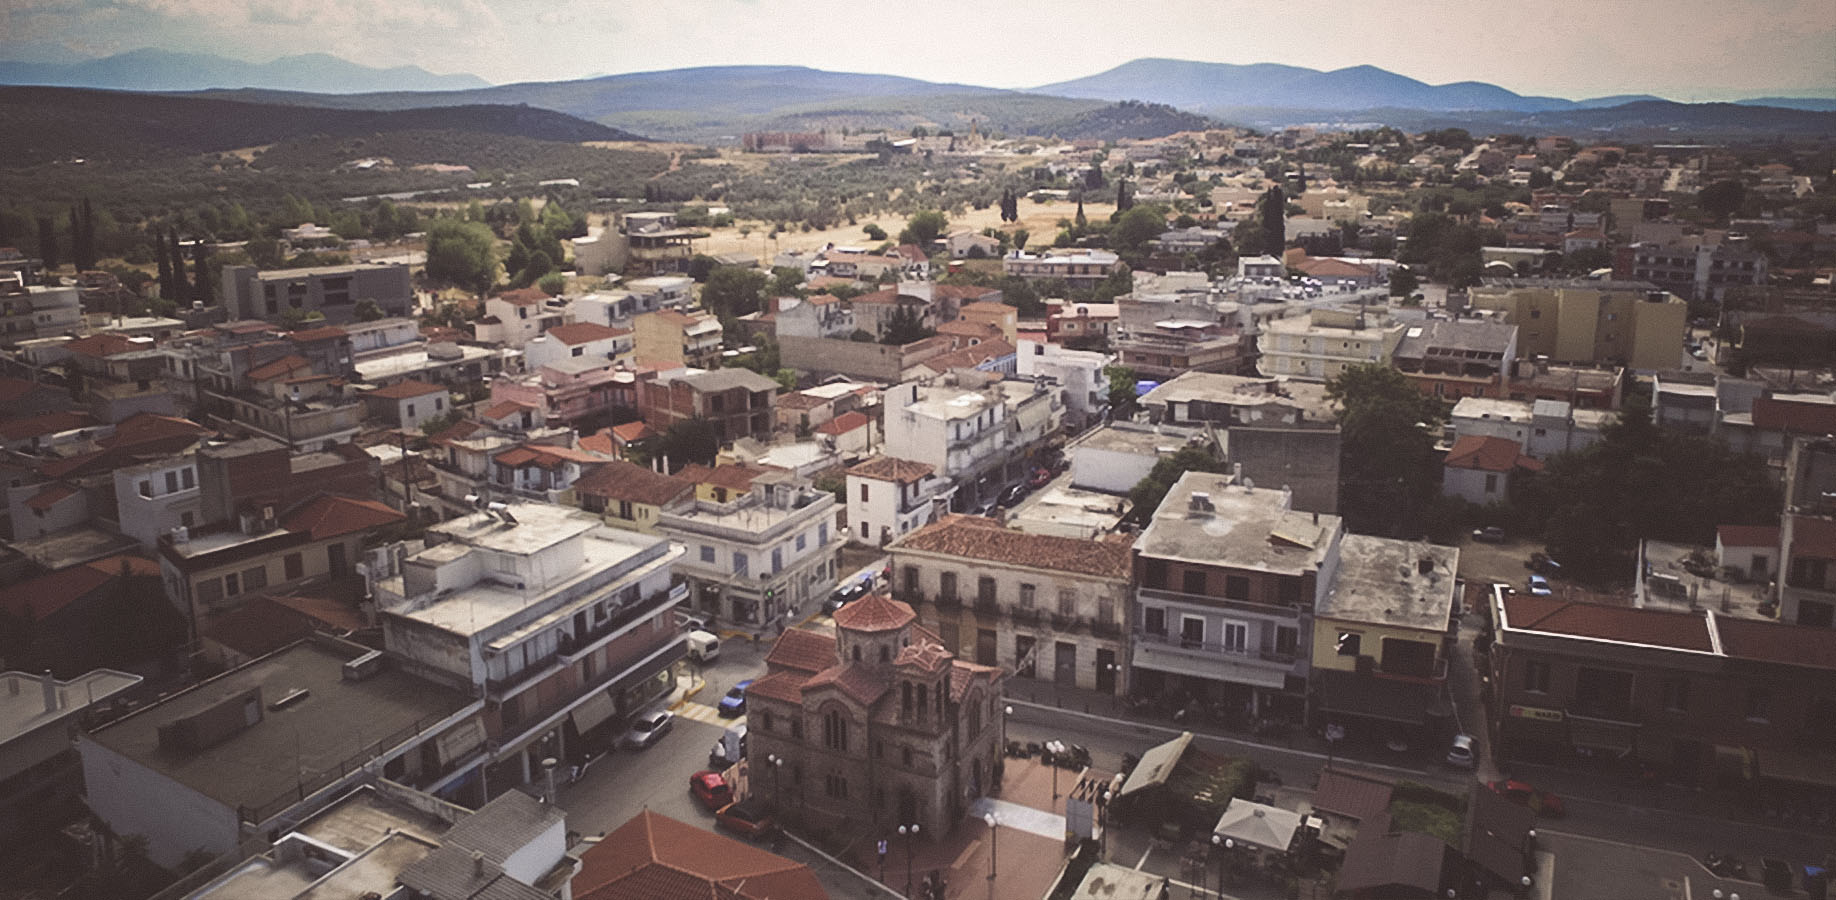 Ανακοίνωση Δήμου Διρφύων – Μεσσαπίων για επανασύνδεση ρεύματος ευάλωτων νοικοκυριών